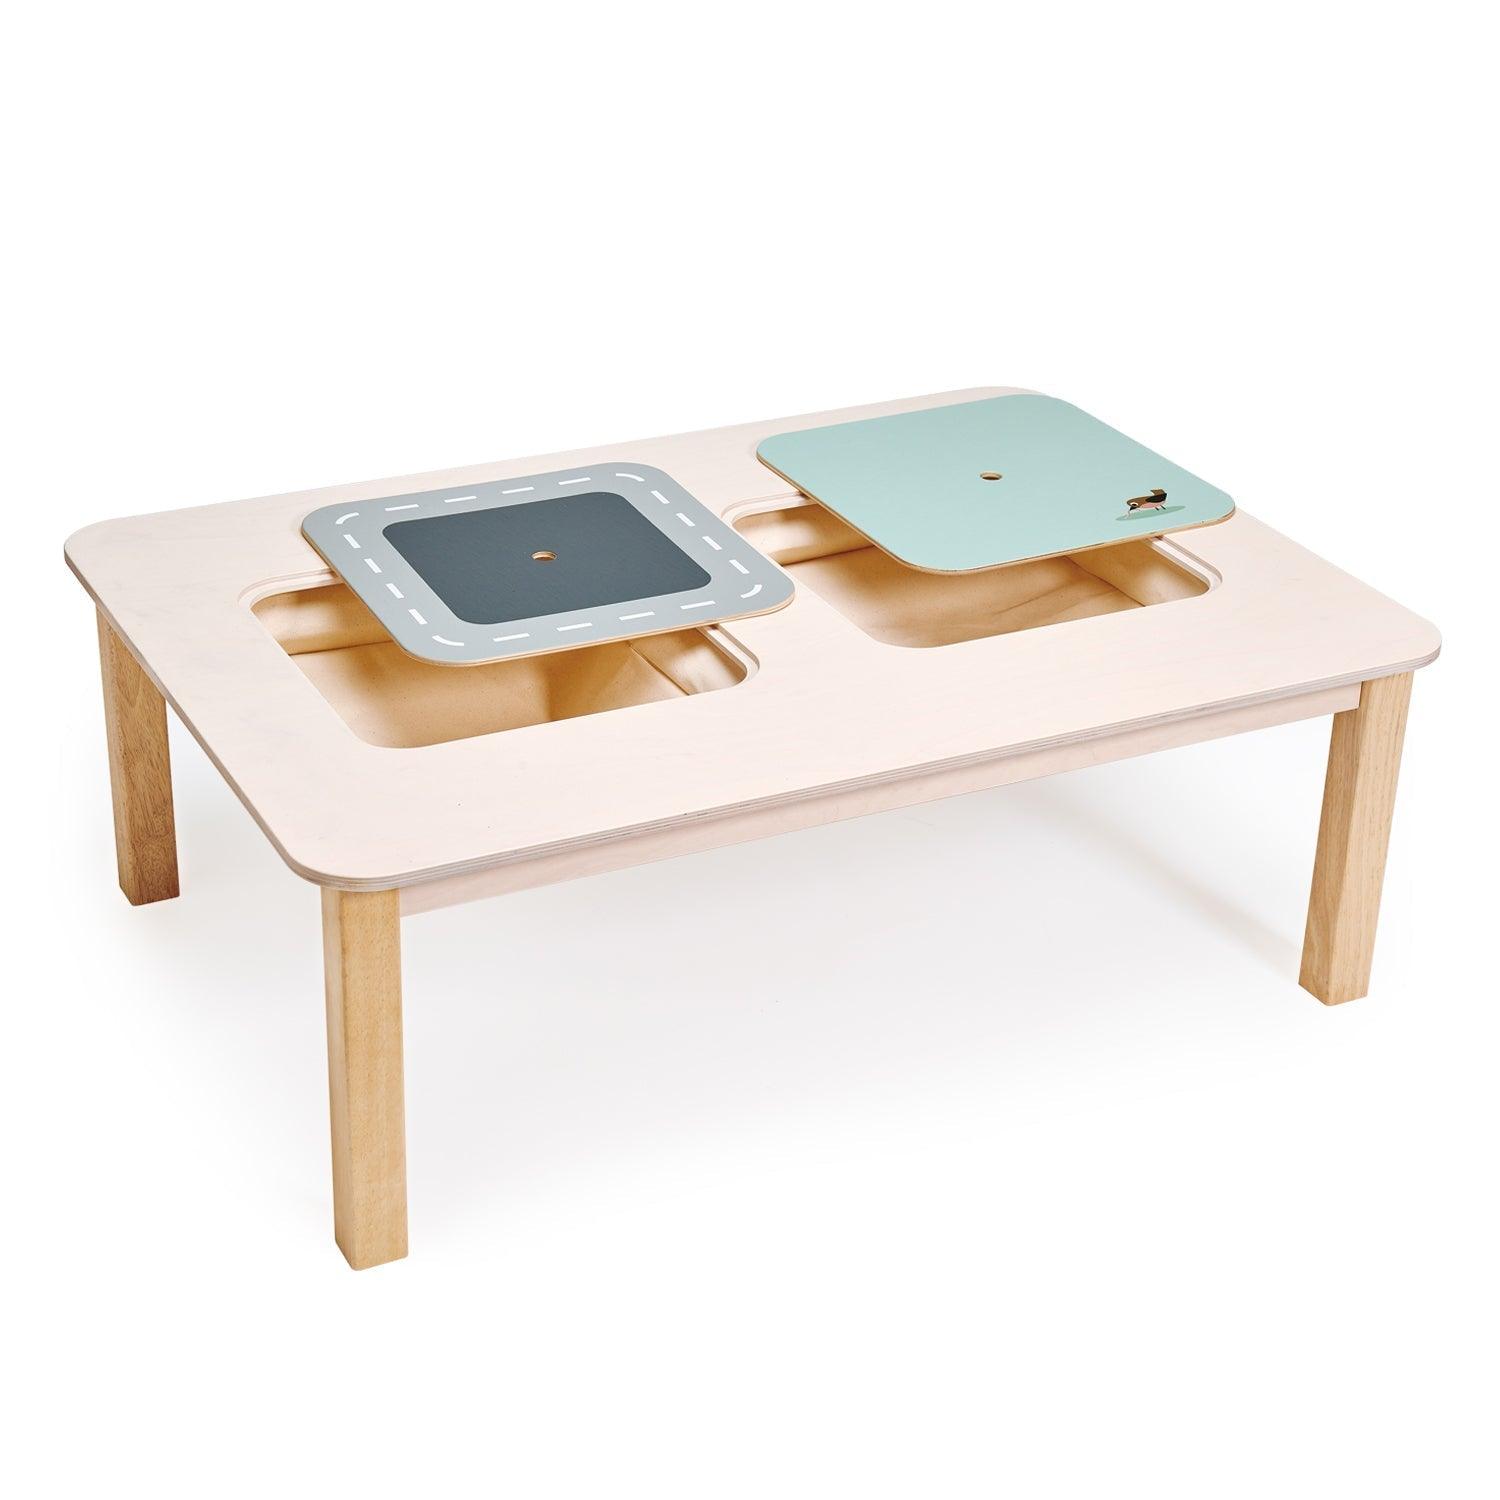 Tender Leaf Toys: duży stolik z podwójnym schowkiem Play Table - Noski Noski